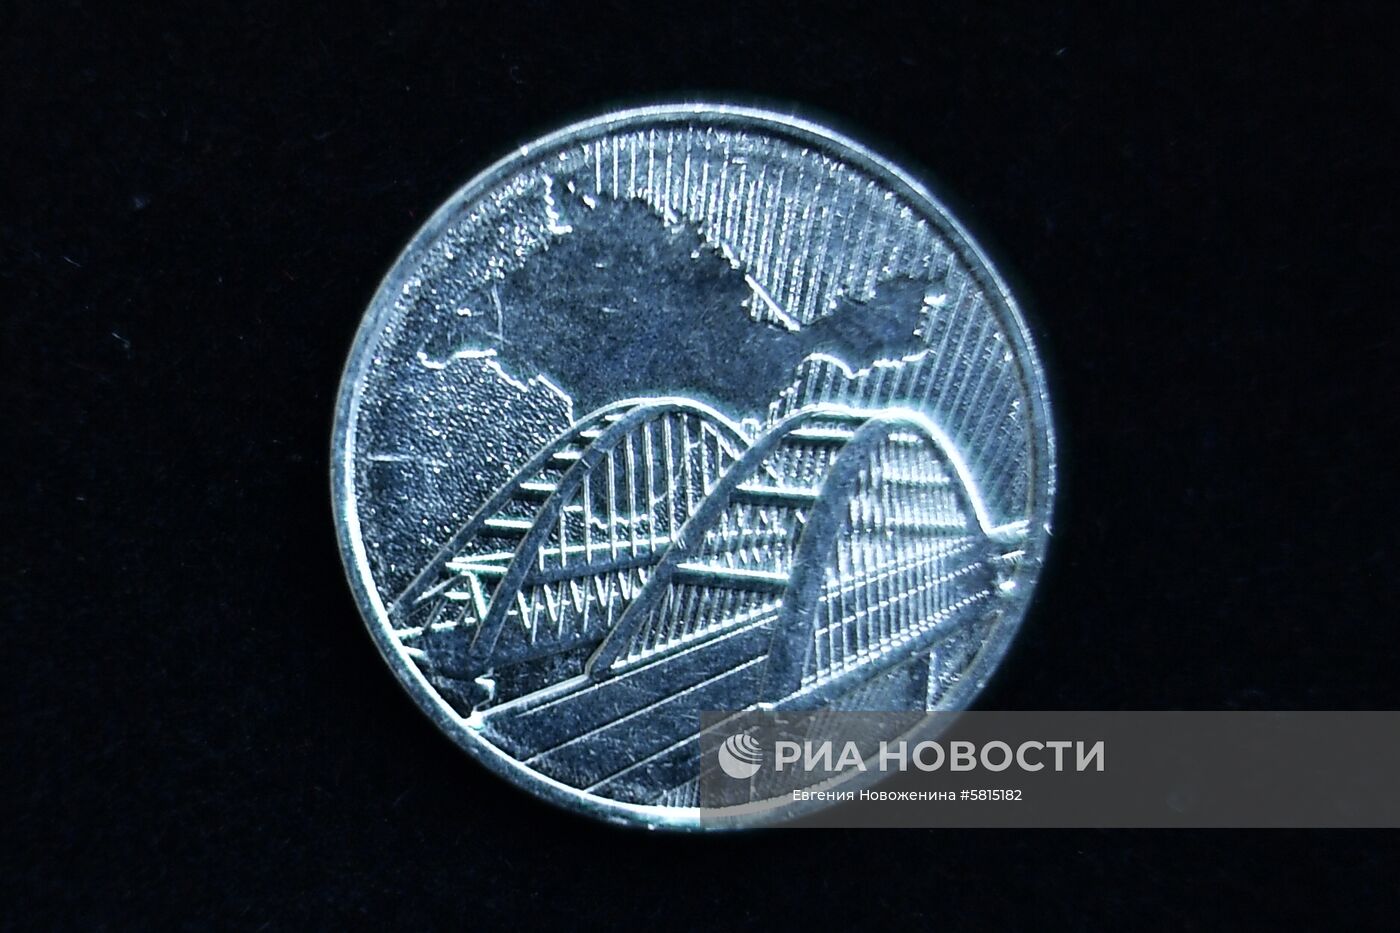 Банк России выпустил памятную монету к пятой годовщине воссоединения Крыма с Россией